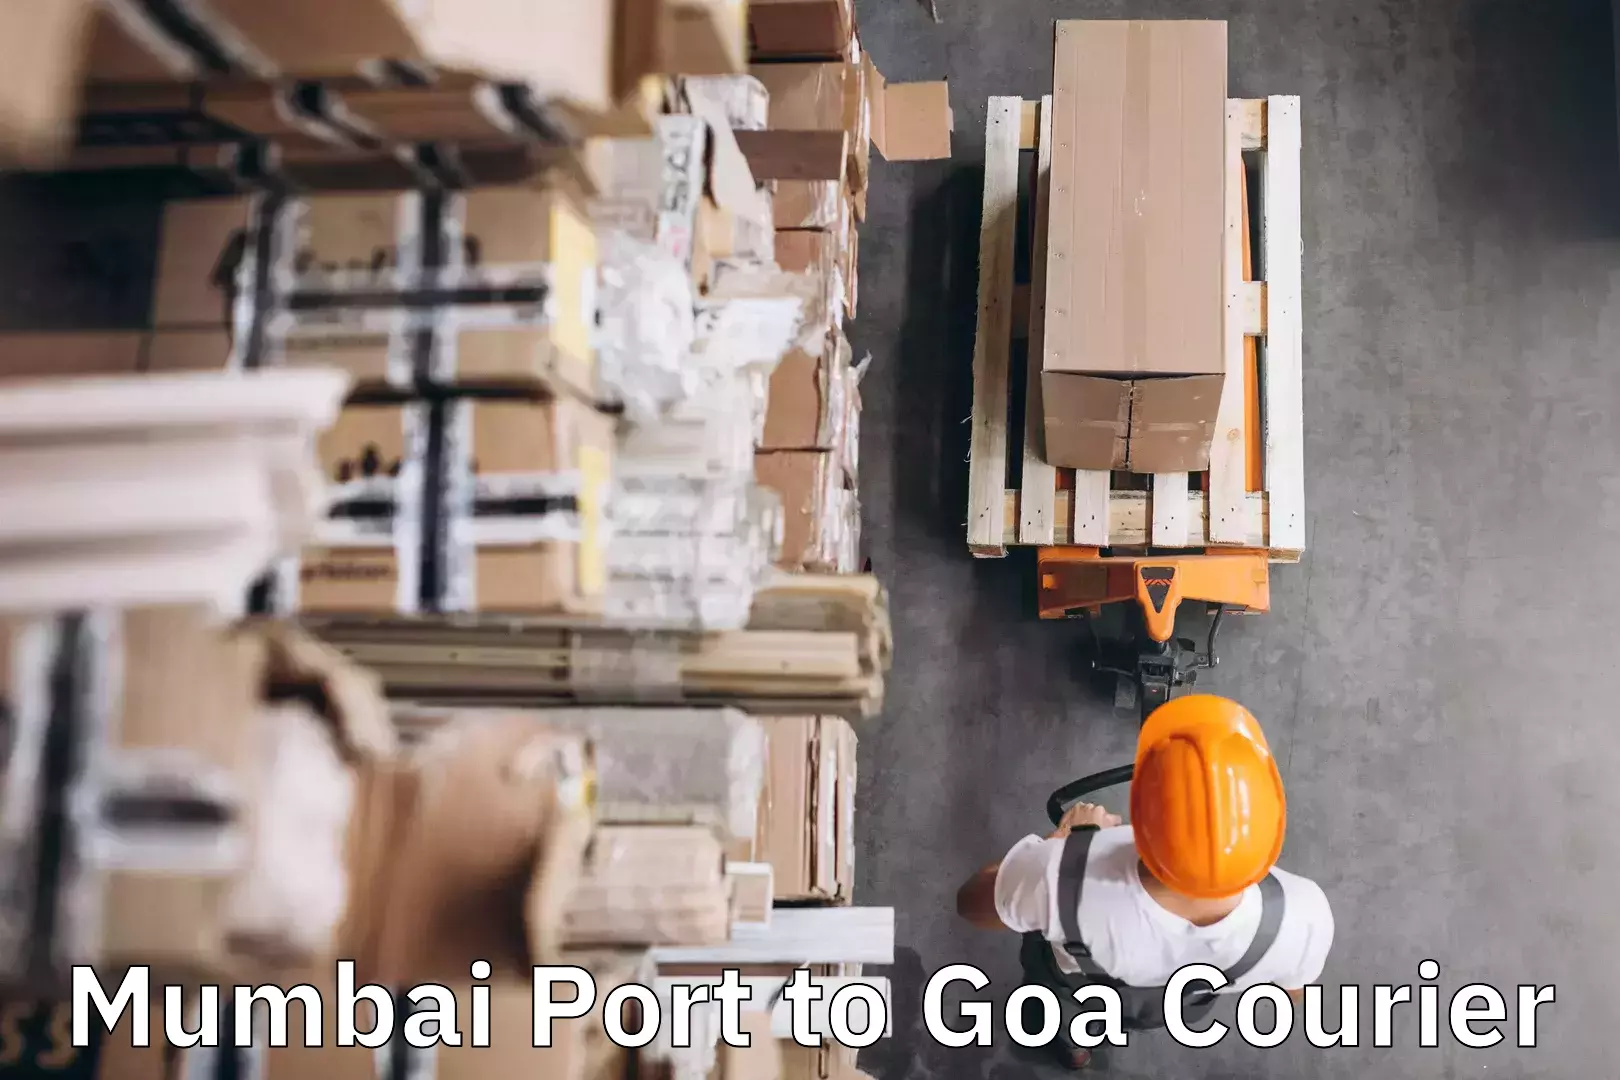 Luggage transport service Mumbai Port to Goa University